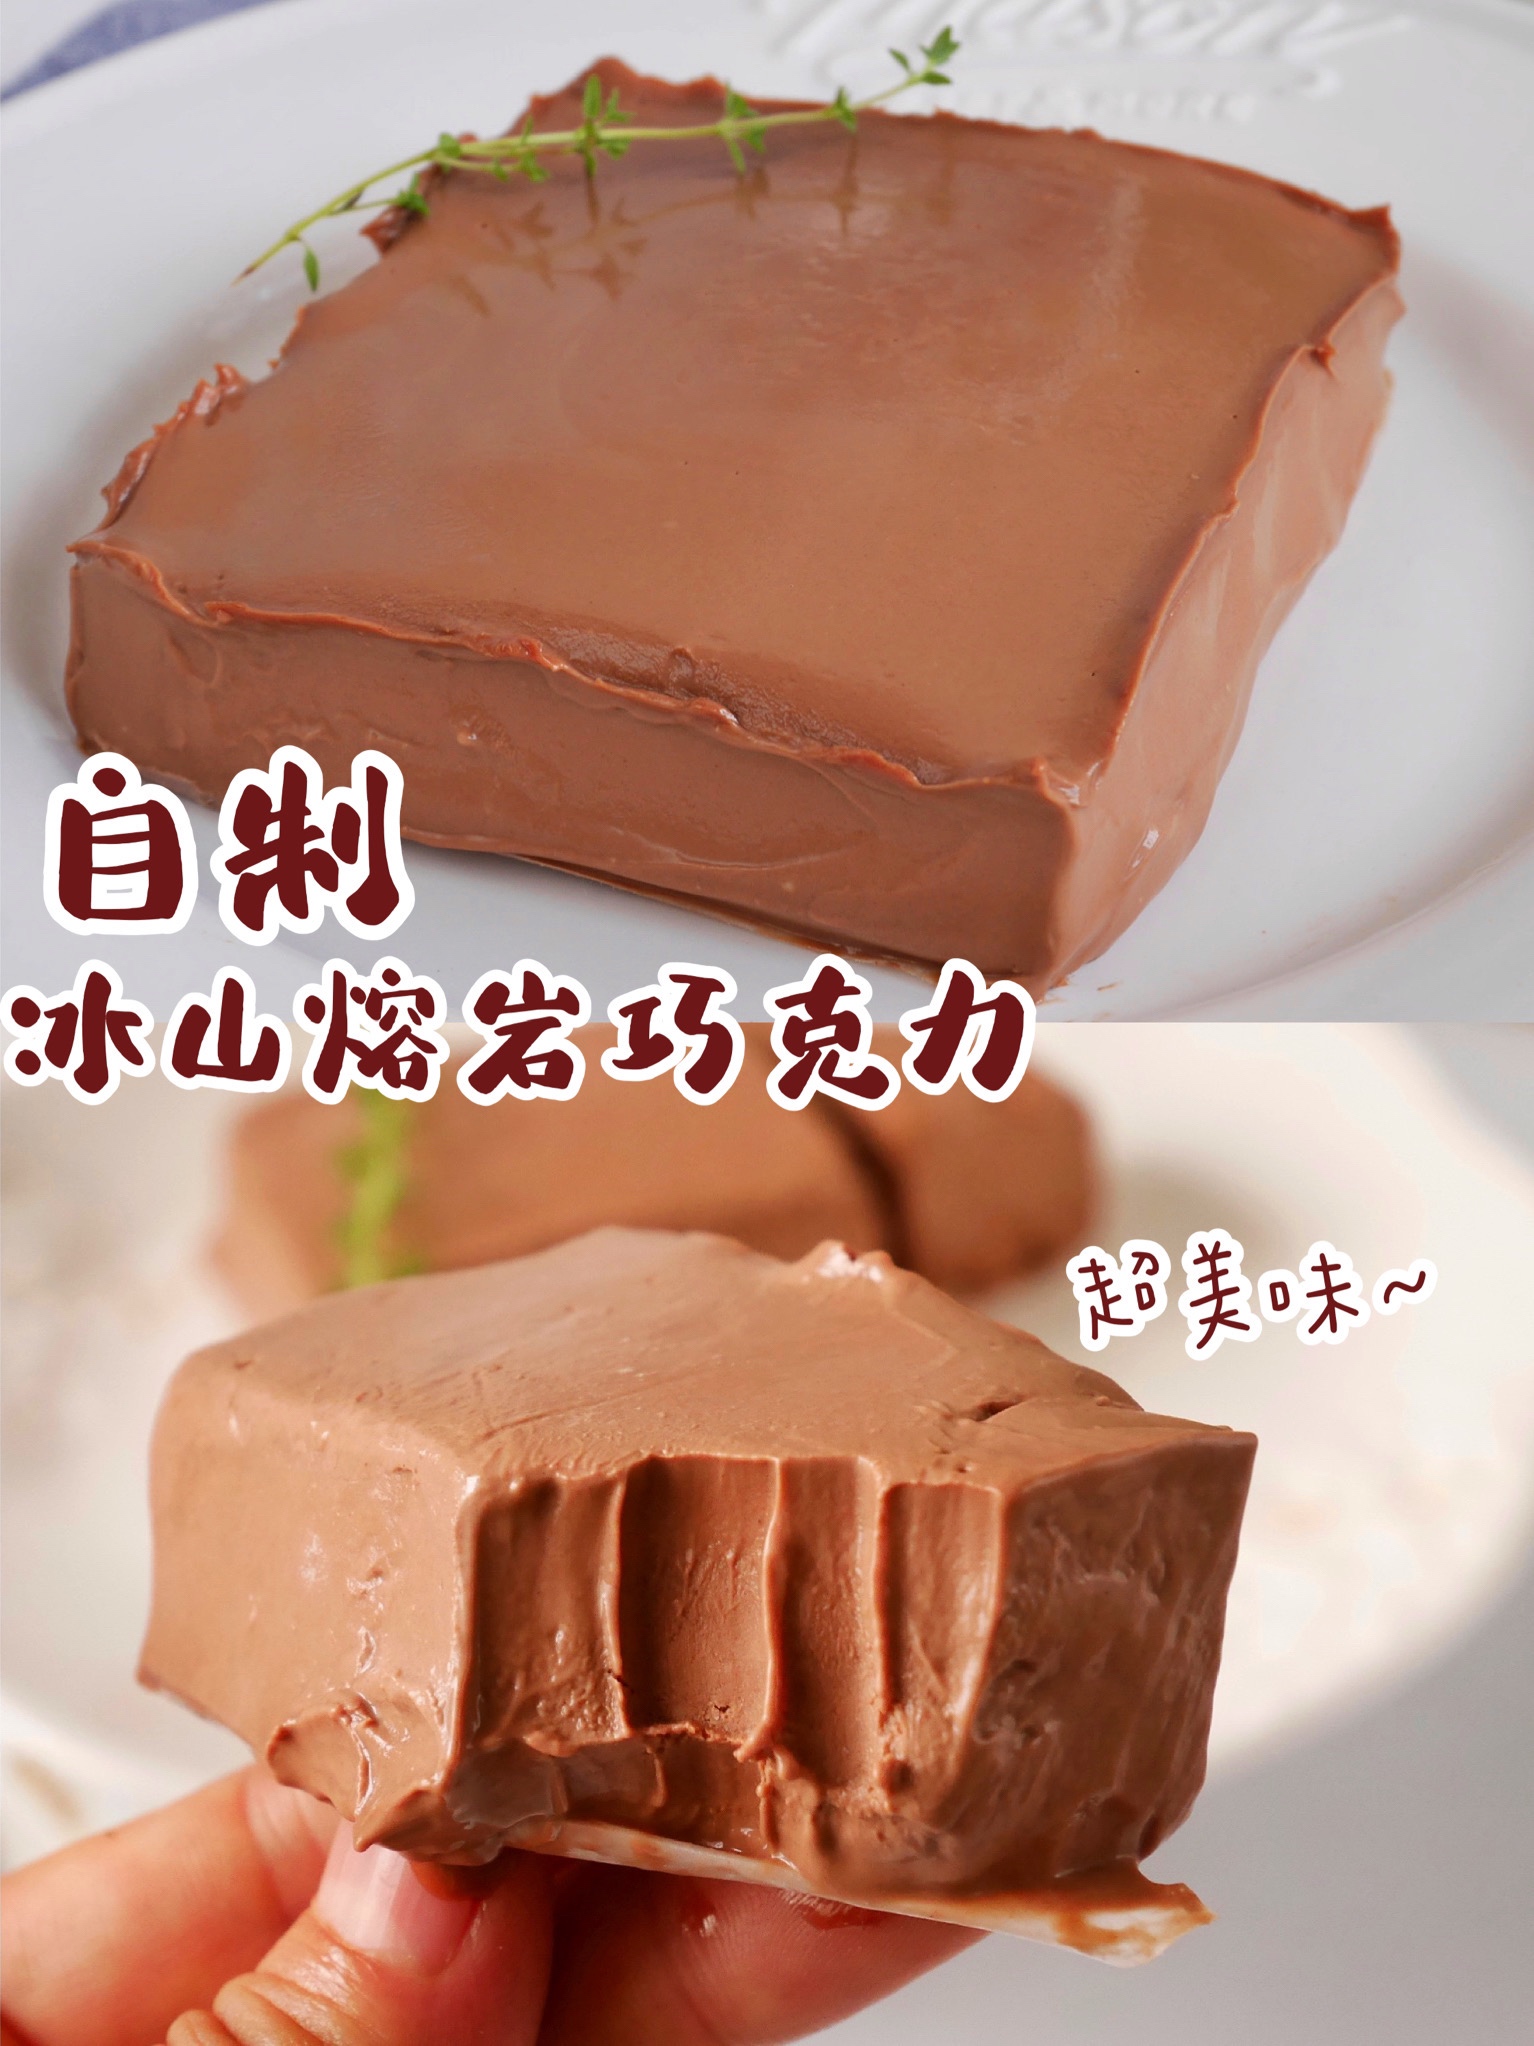 自制超好吃的❗️网红甜品❗️冰山熔岩巧克力的做法